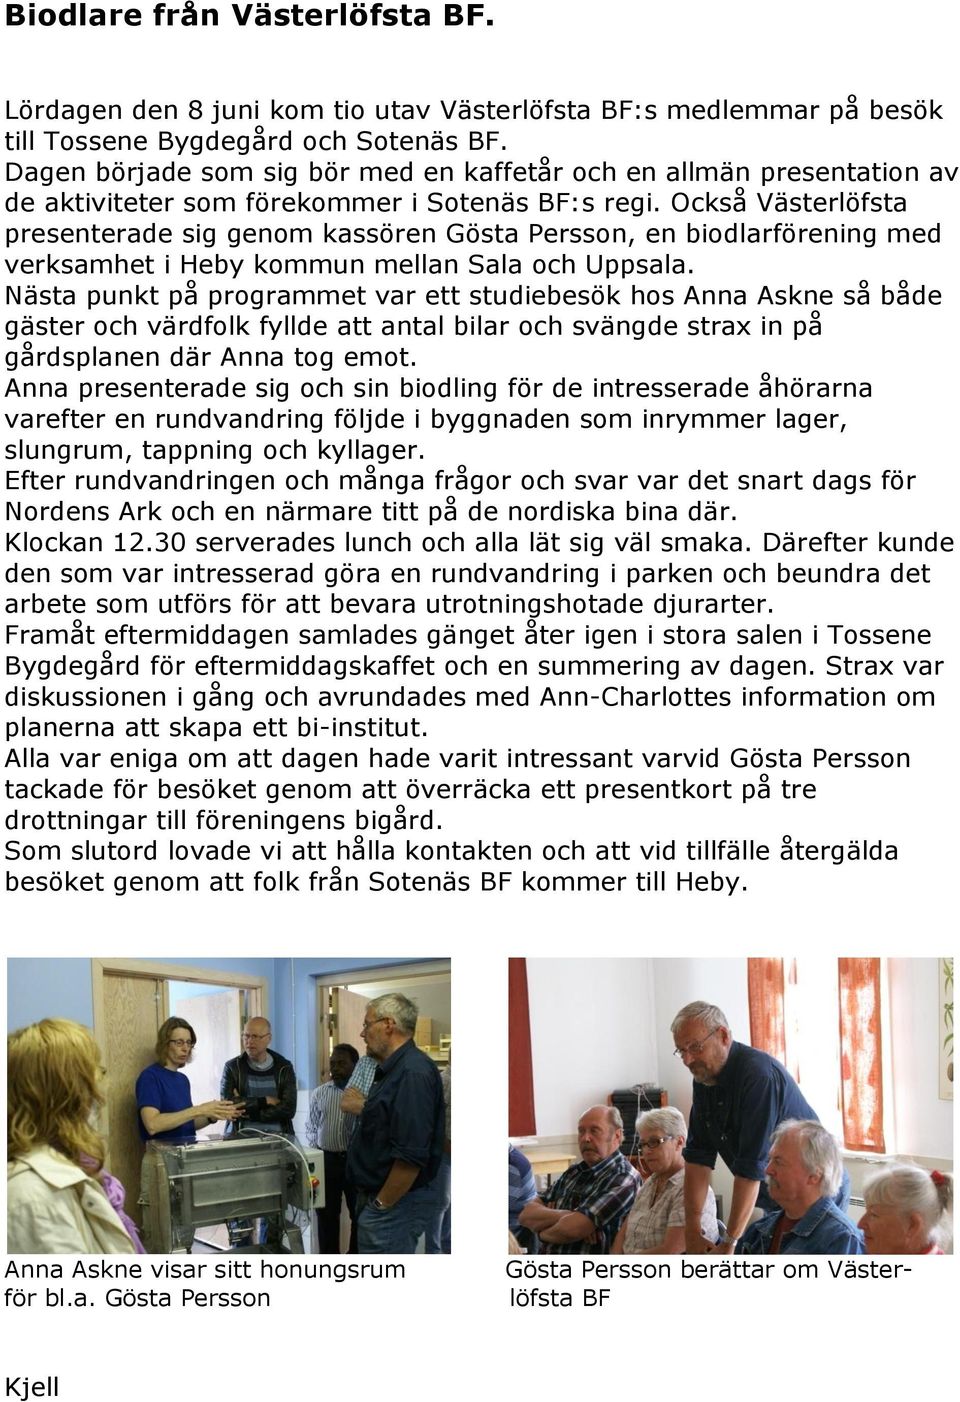 Också Västerlöfsta presenterade sig genom kassören Gösta Persson, en biodlarförening med verksamhet i Heby kommun mellan Sala och Uppsala.